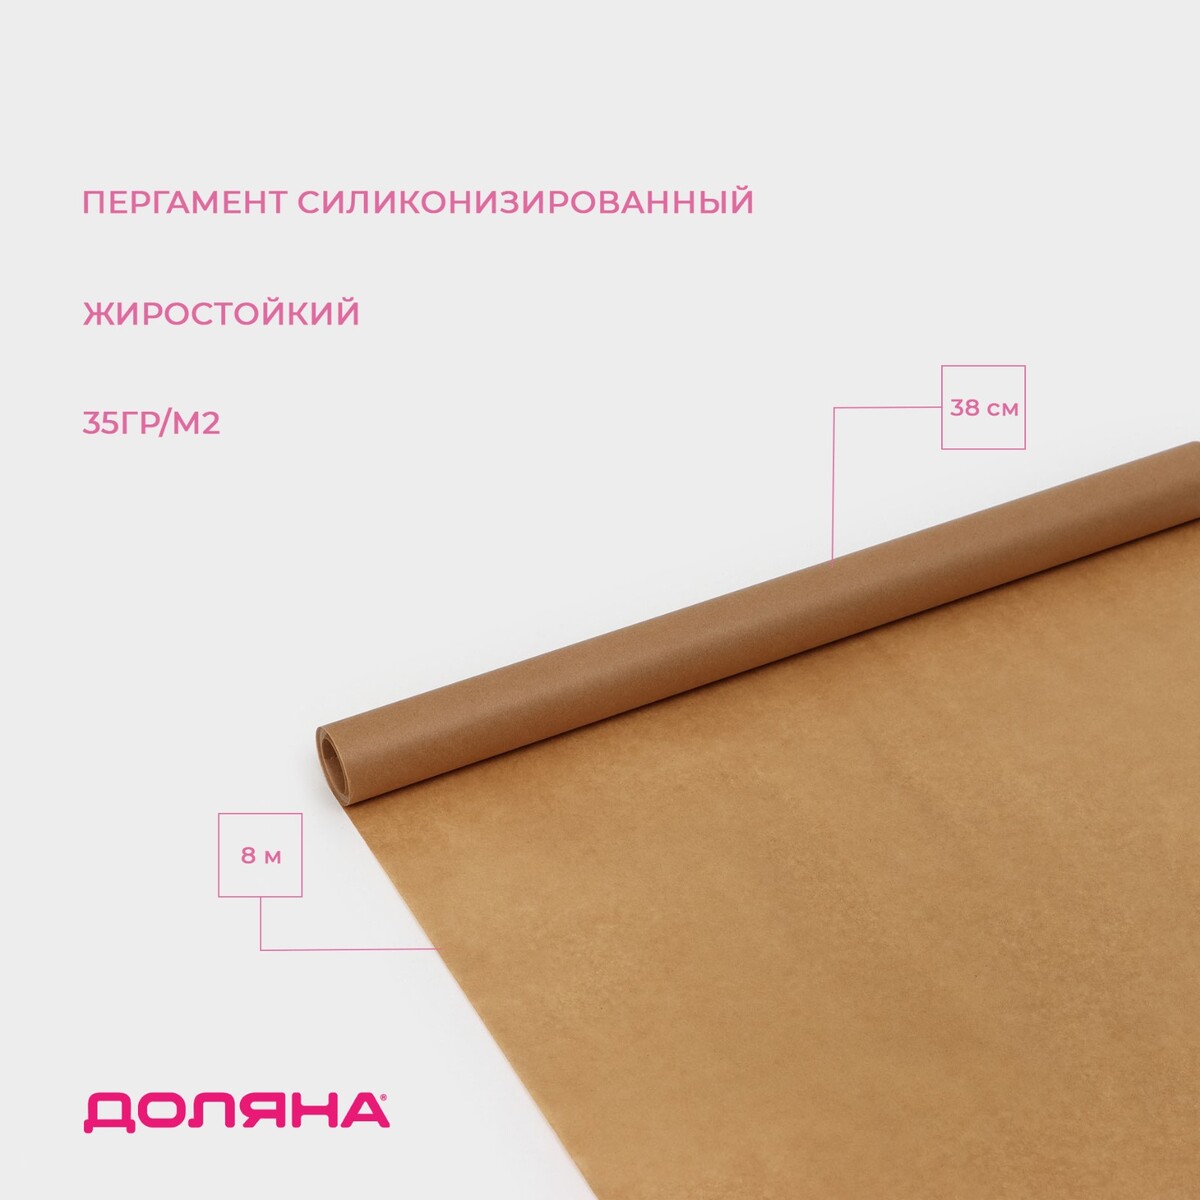 Пергамент силиконизированный доляна, 38 см х 8 м, коричневый, жиростойкий пергамент для выпечки доляна 26 см×6 м